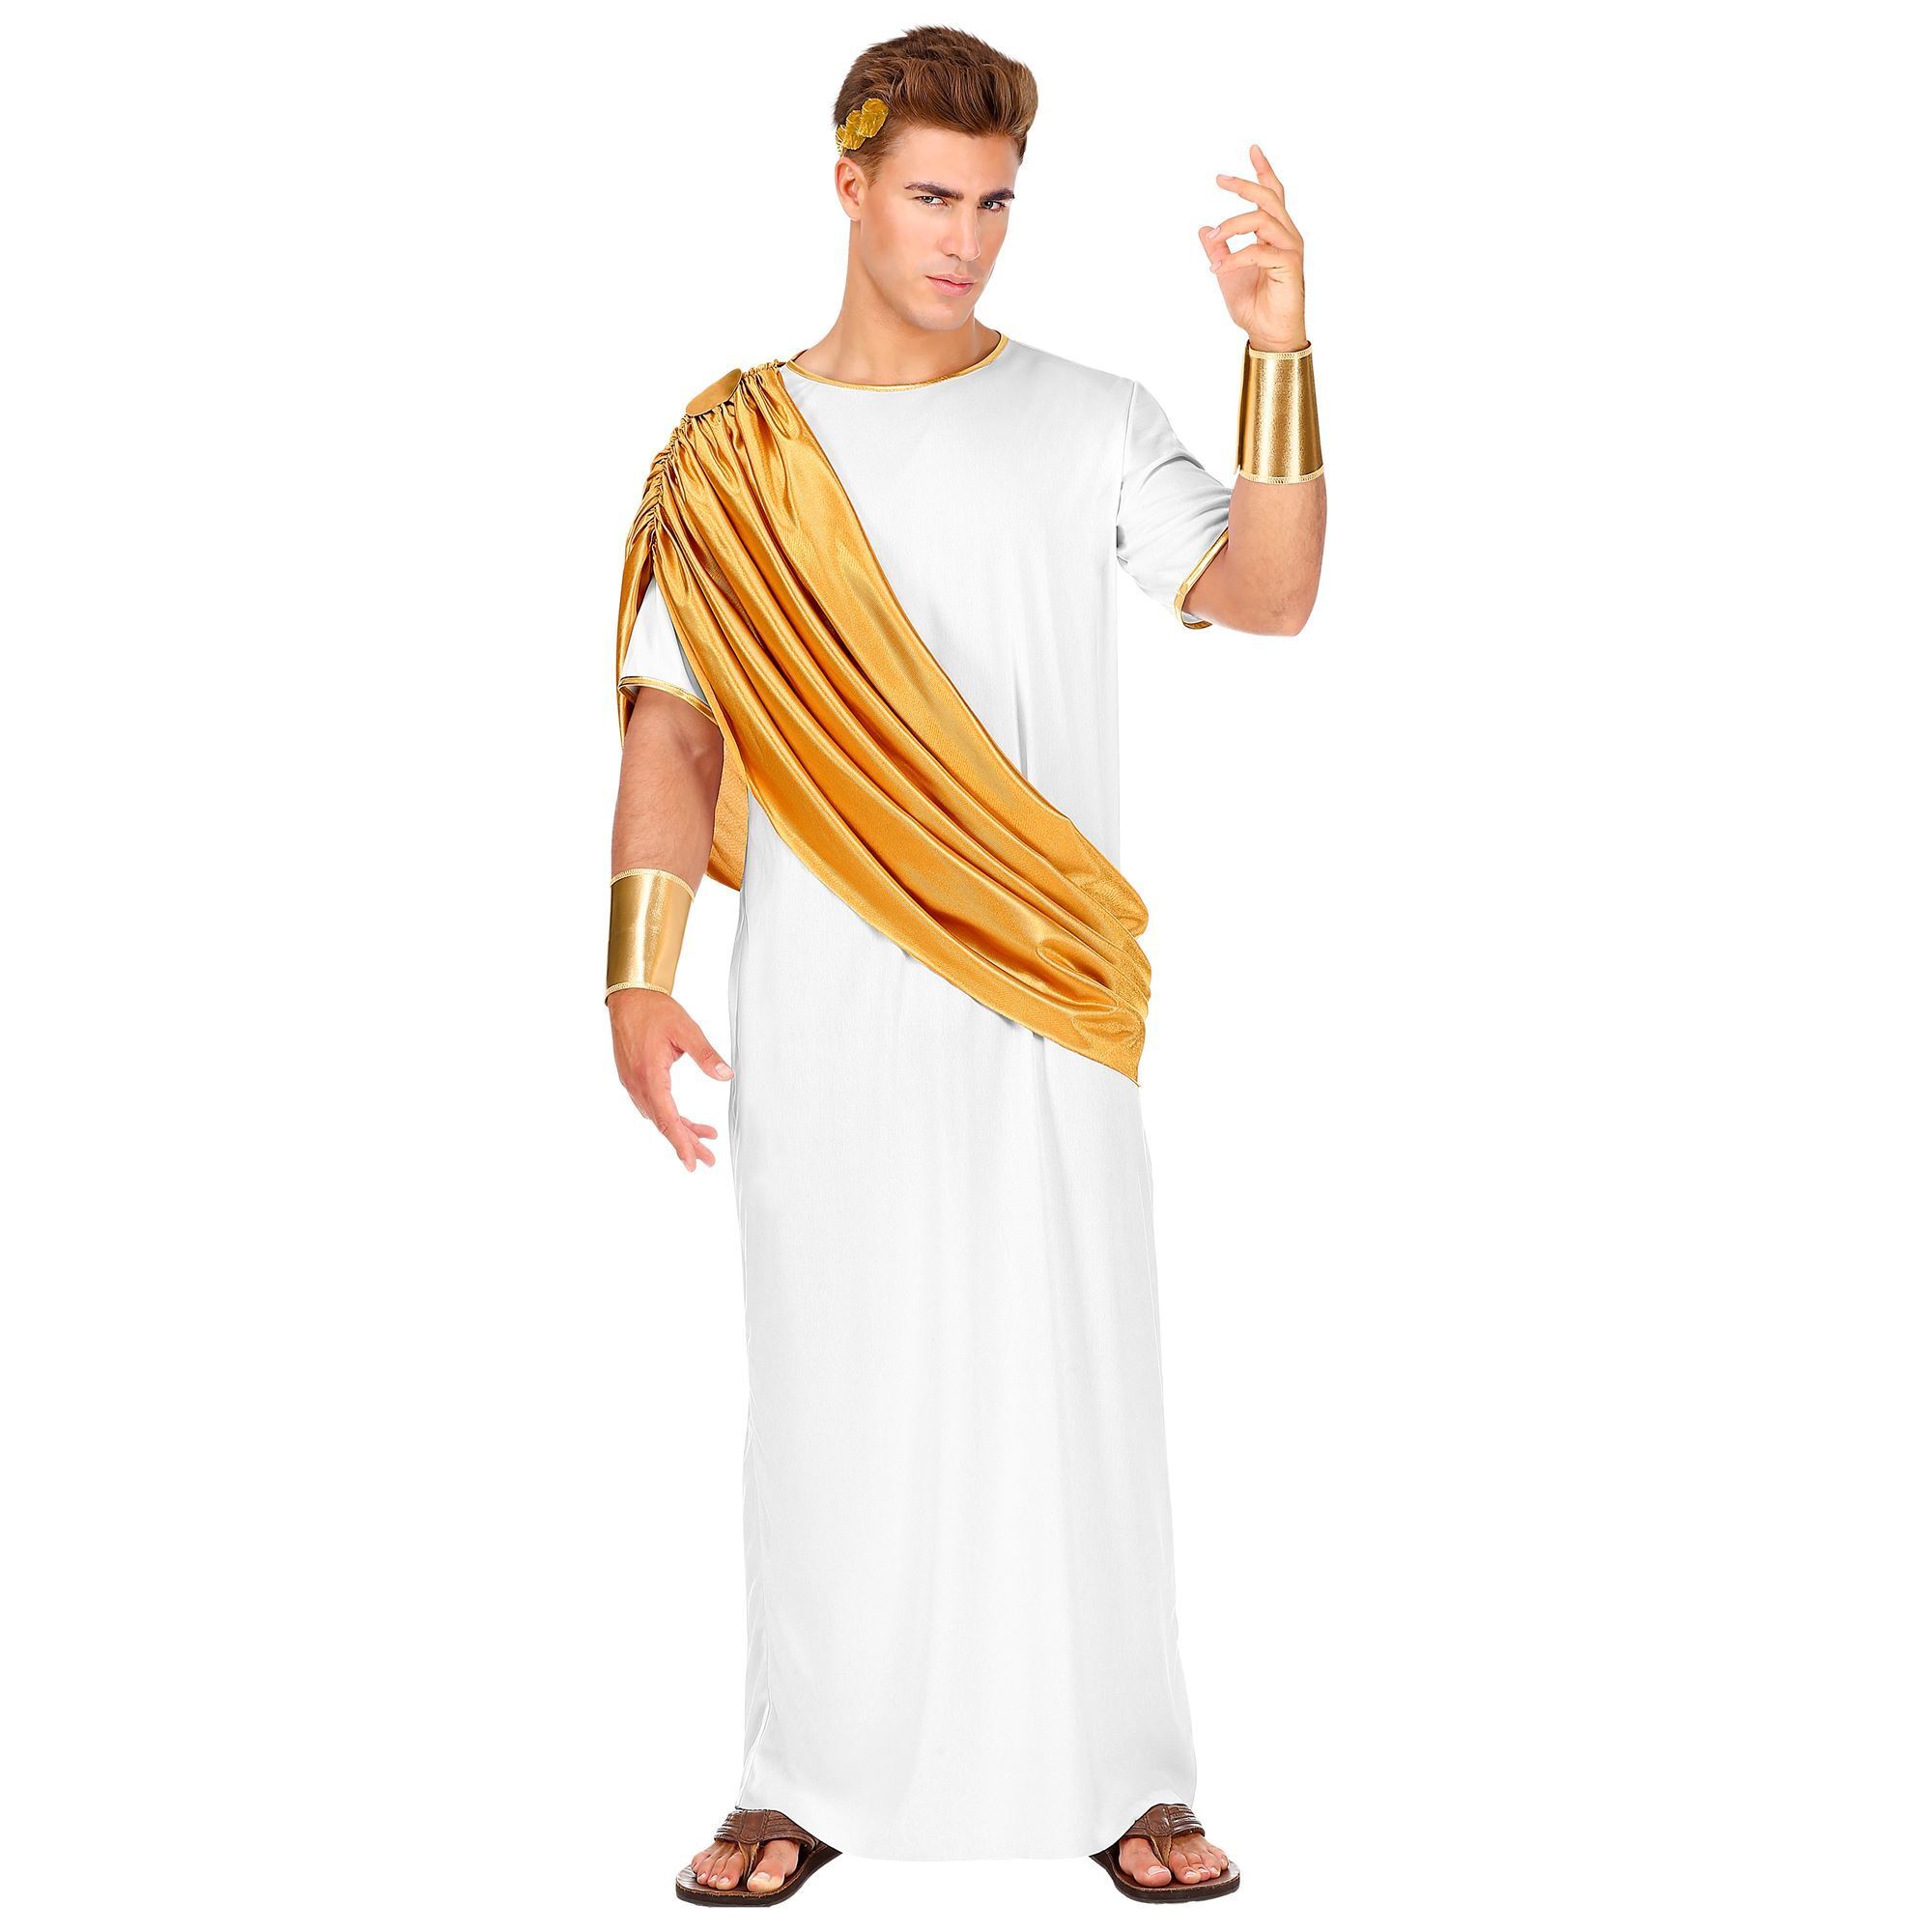 Caesar kostuum Romeinse toga